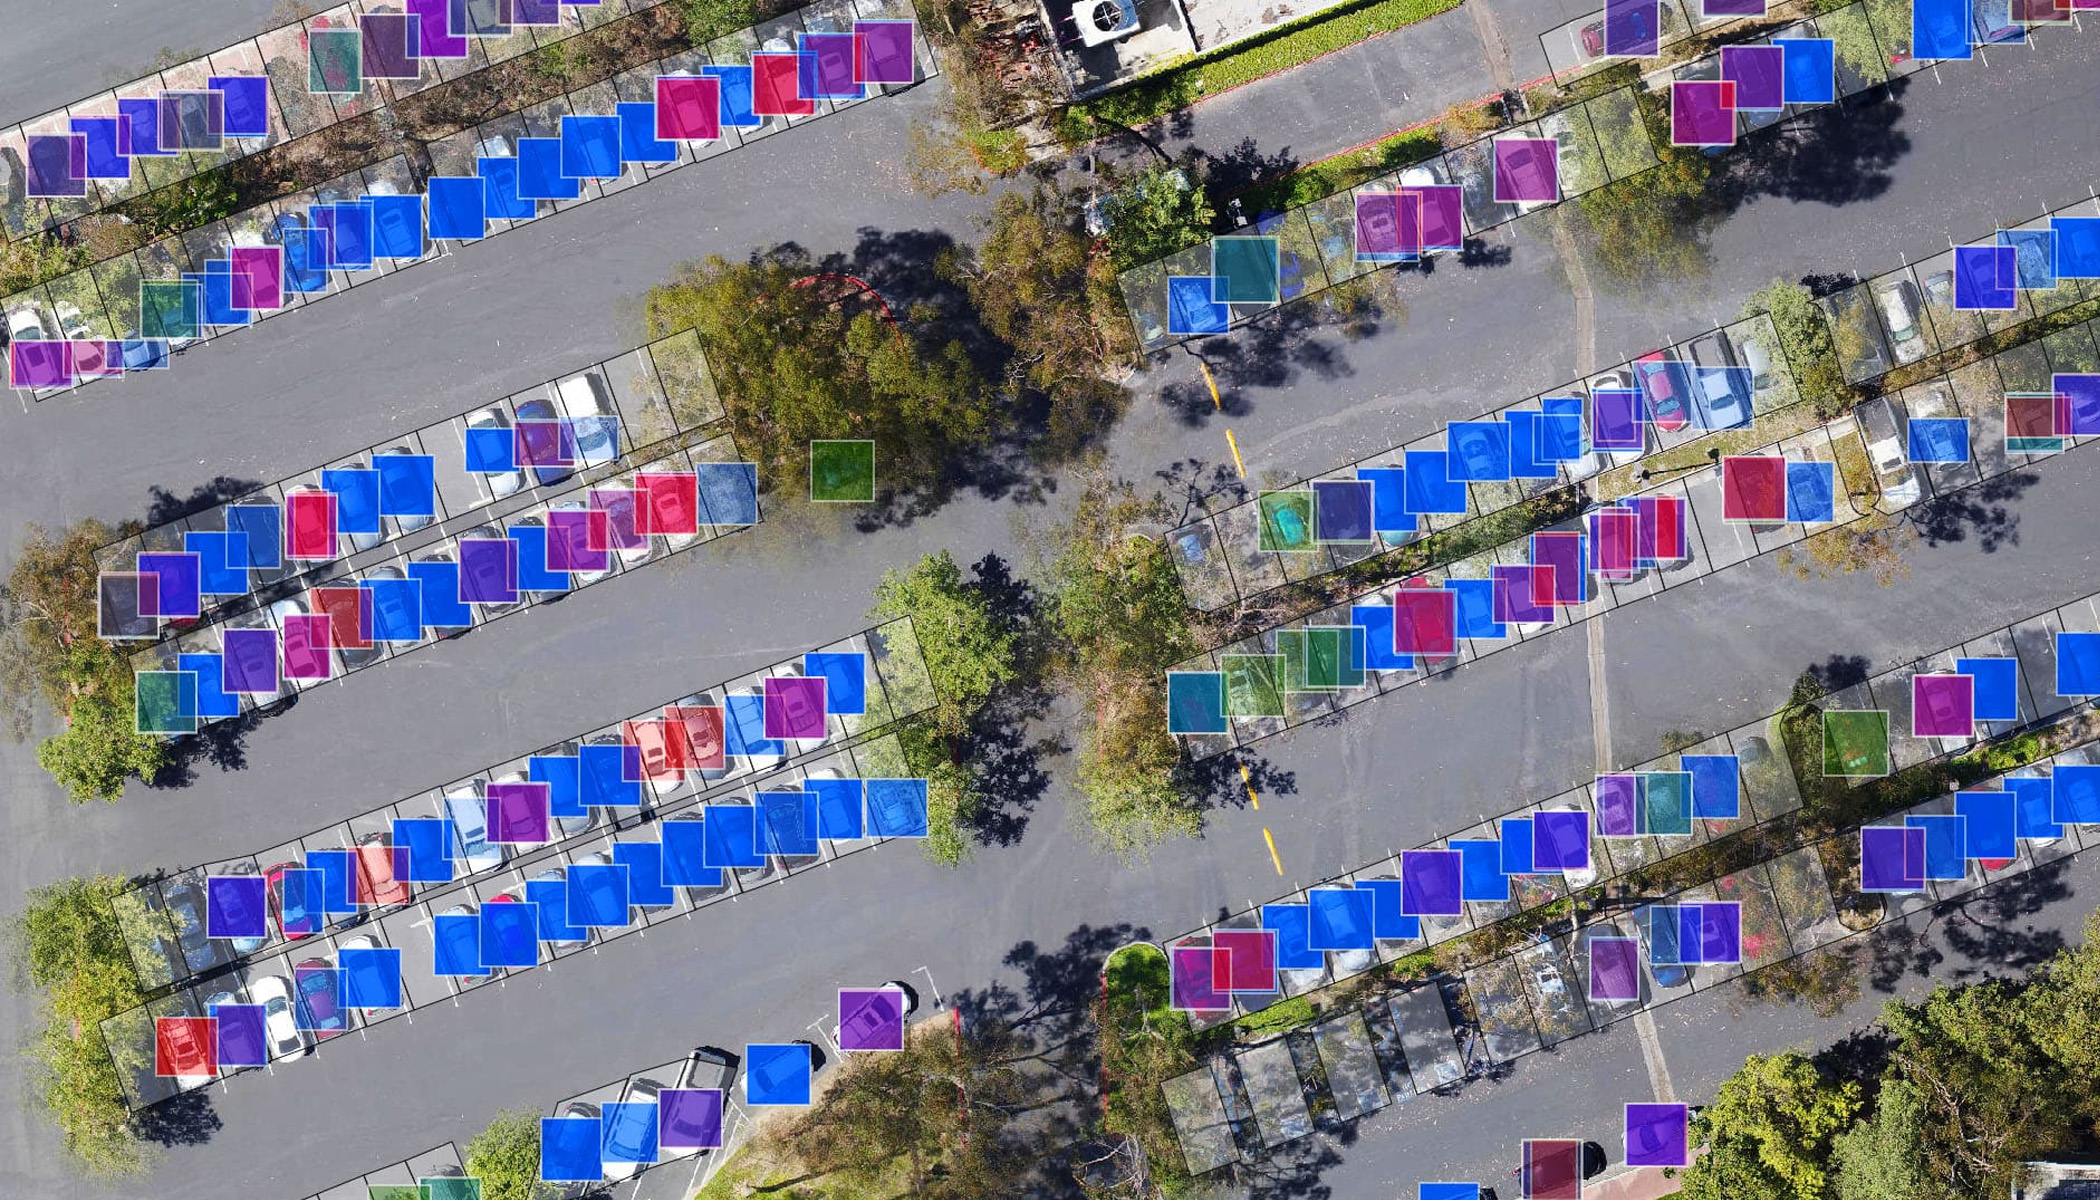 Widok z lotu ptaka na parking z samochodami z nałożonymi niebieskimi, fioletowymi, zielonymi i różowymi kwadratami